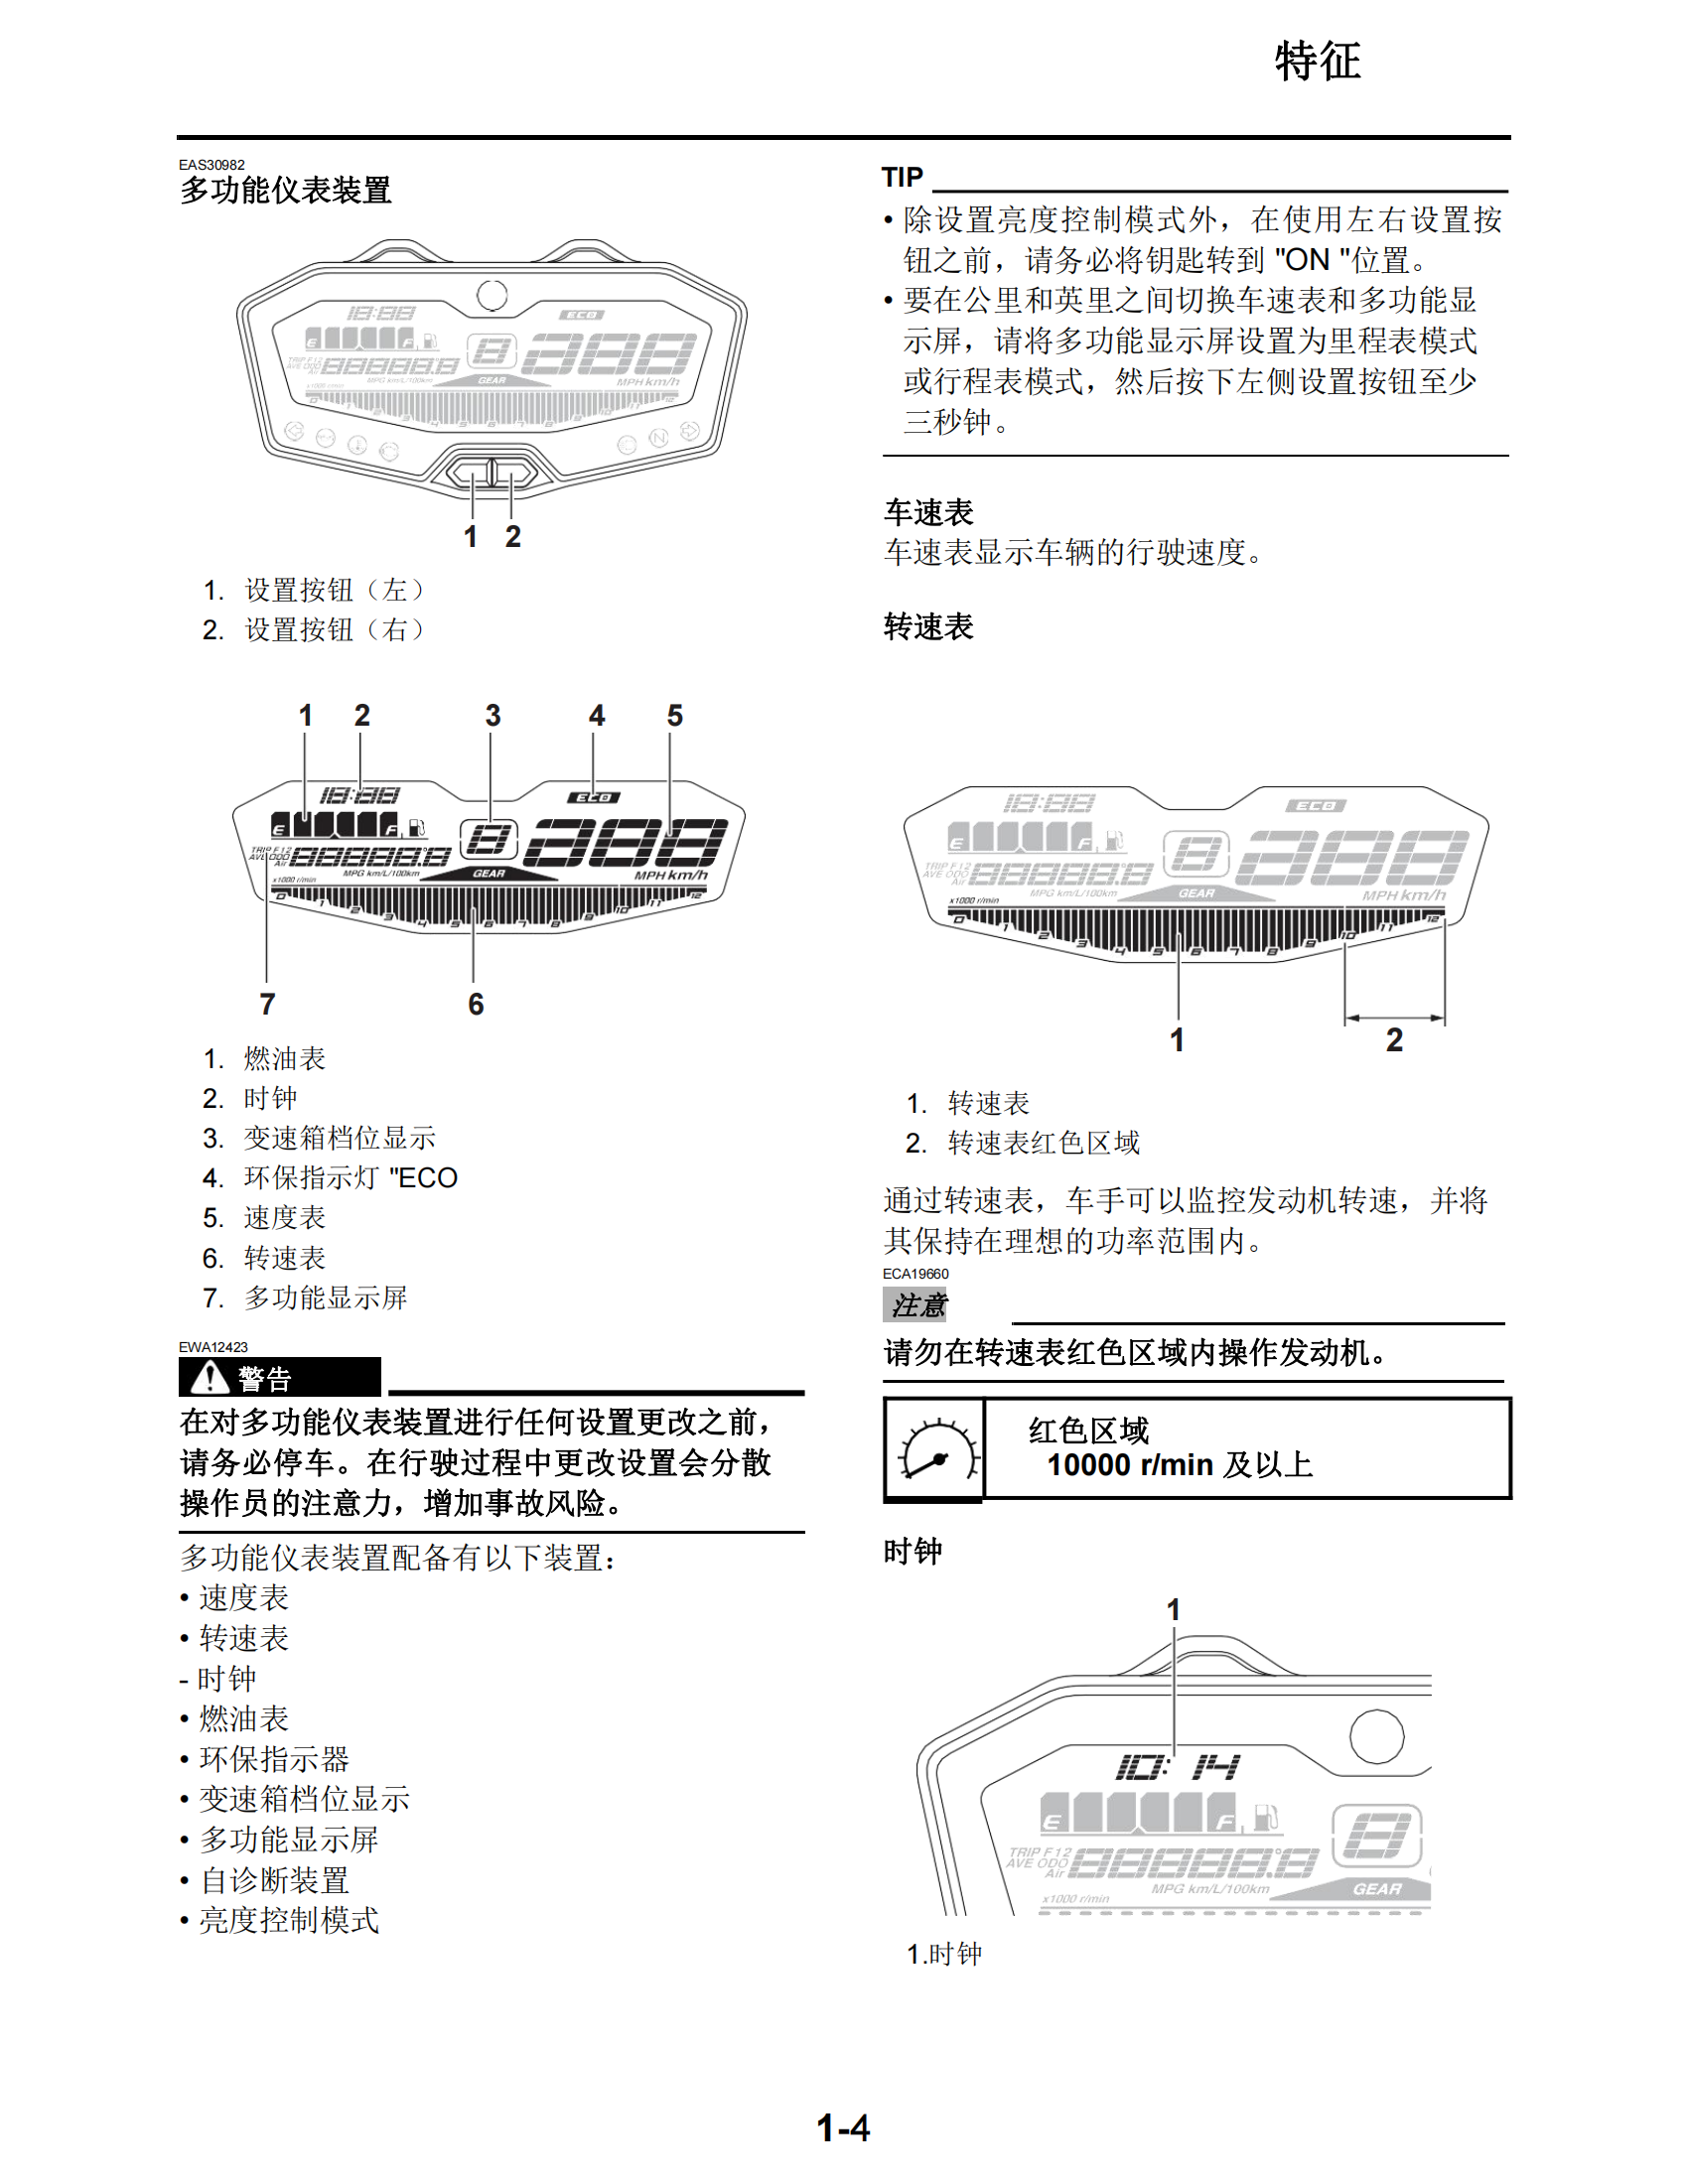 简体中文2014-2015年雅马哈fz07维修手册适用于同年份mt07维修手册插图2